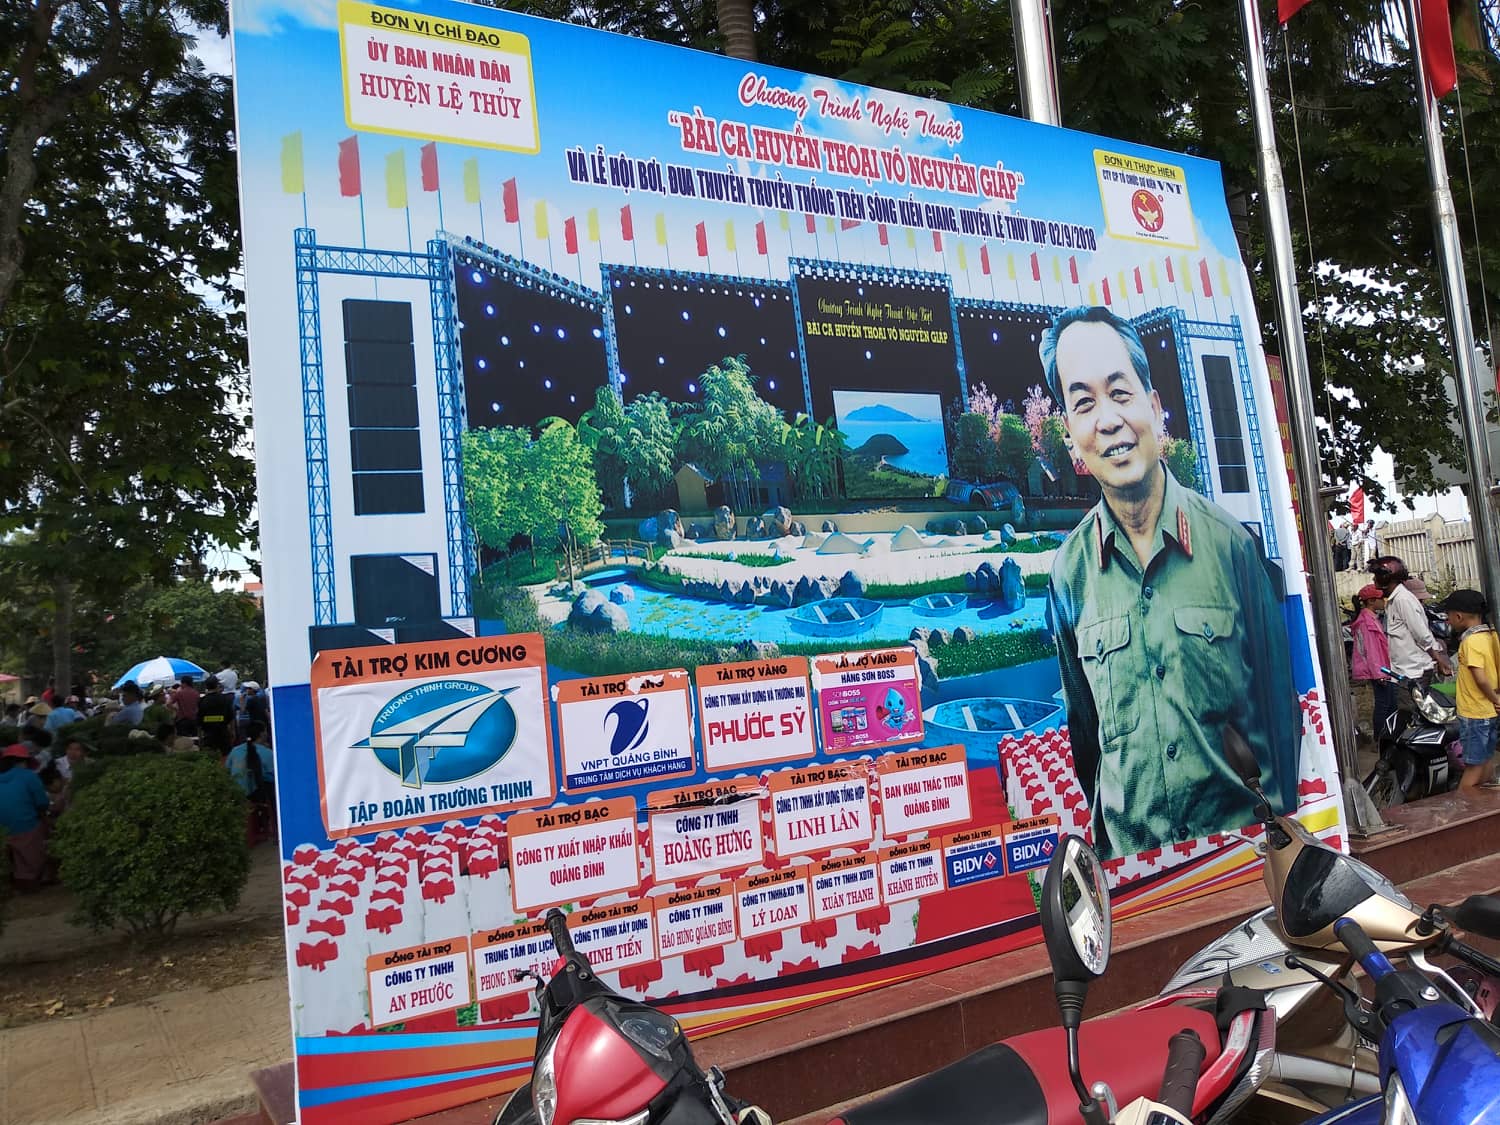 Lễ hội bơi đua thuyền truyền thống trên sông Kiến Giang năm nay diễn ra nhân sự kiện kỷ niệm 107 năm ngày sinh của Đại tướng Võ Nguyên Giáp, người con ưu tú của quê hương Lệ Thủy.